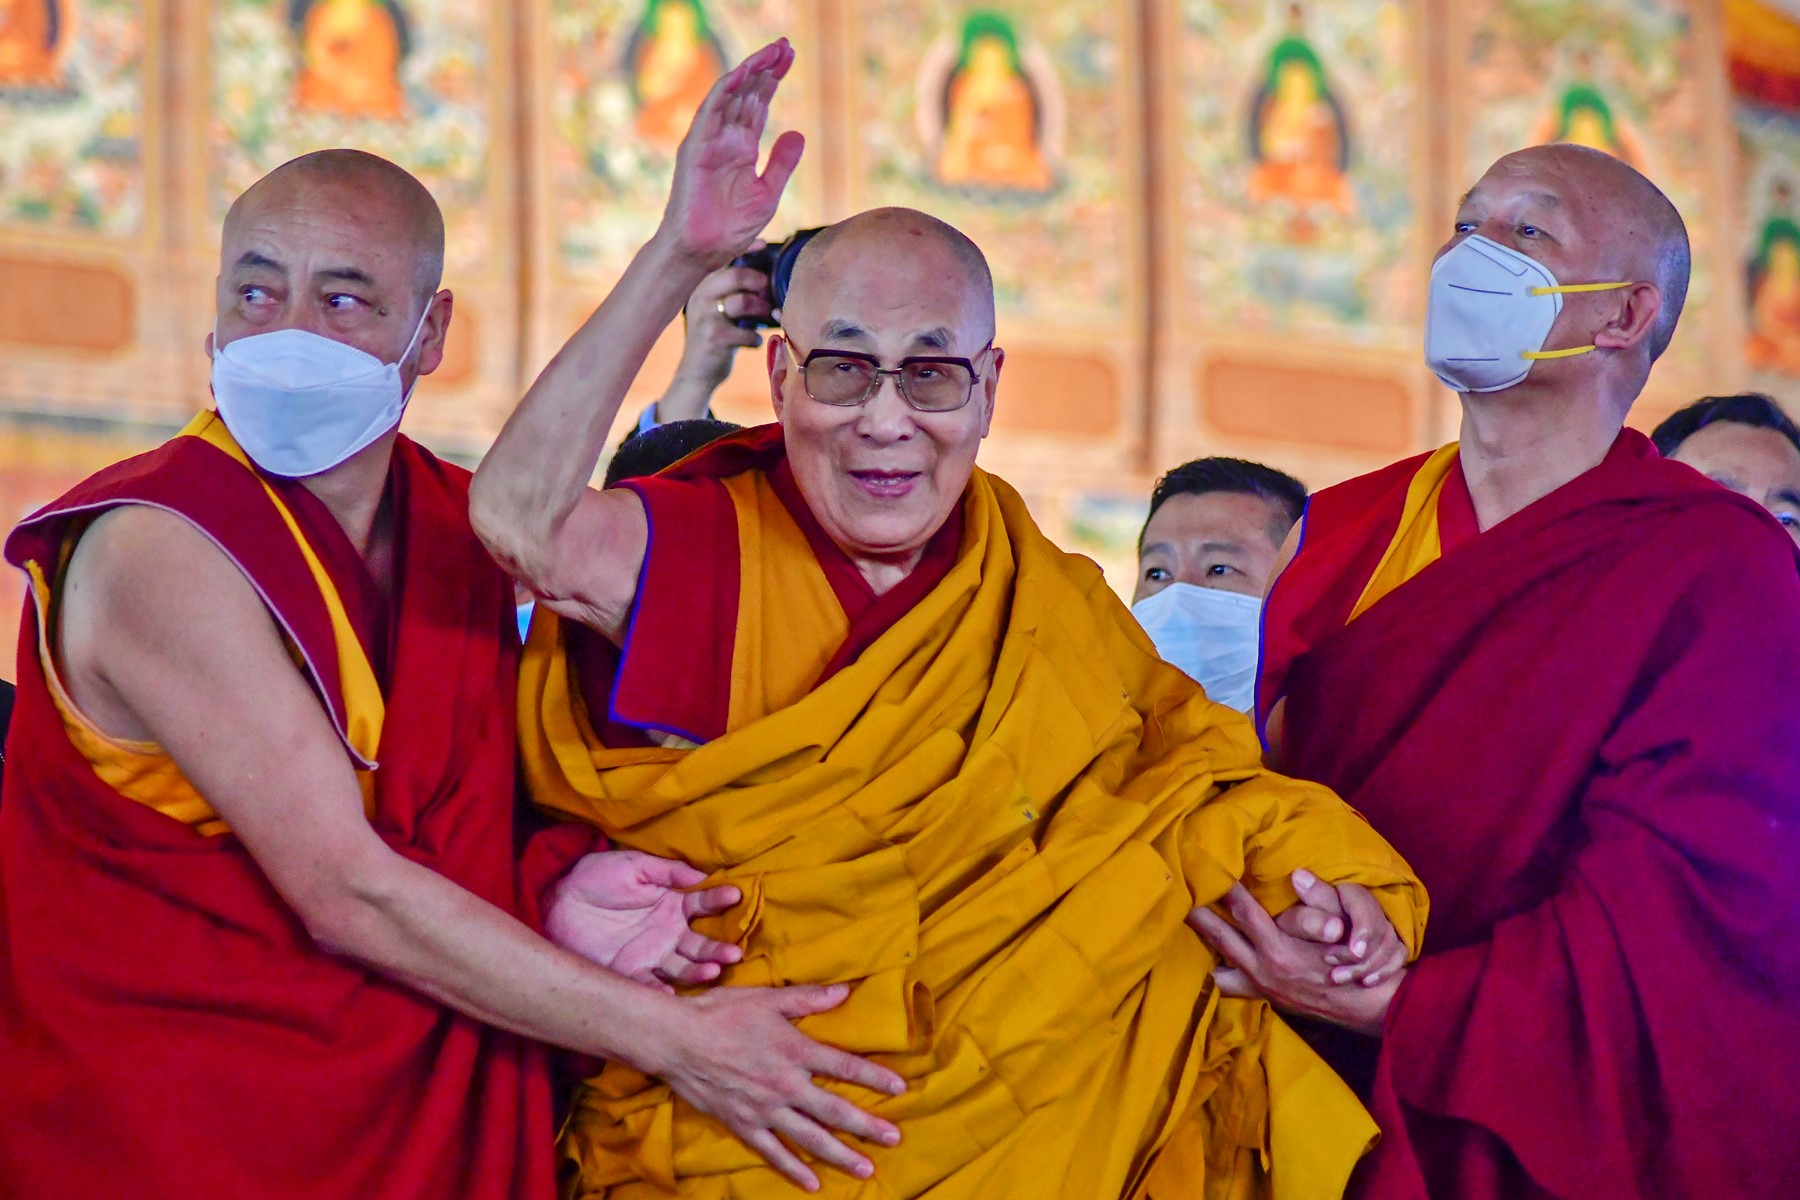 La conducta del Dalai Lama revive los casos de abuso de líderes religiosos